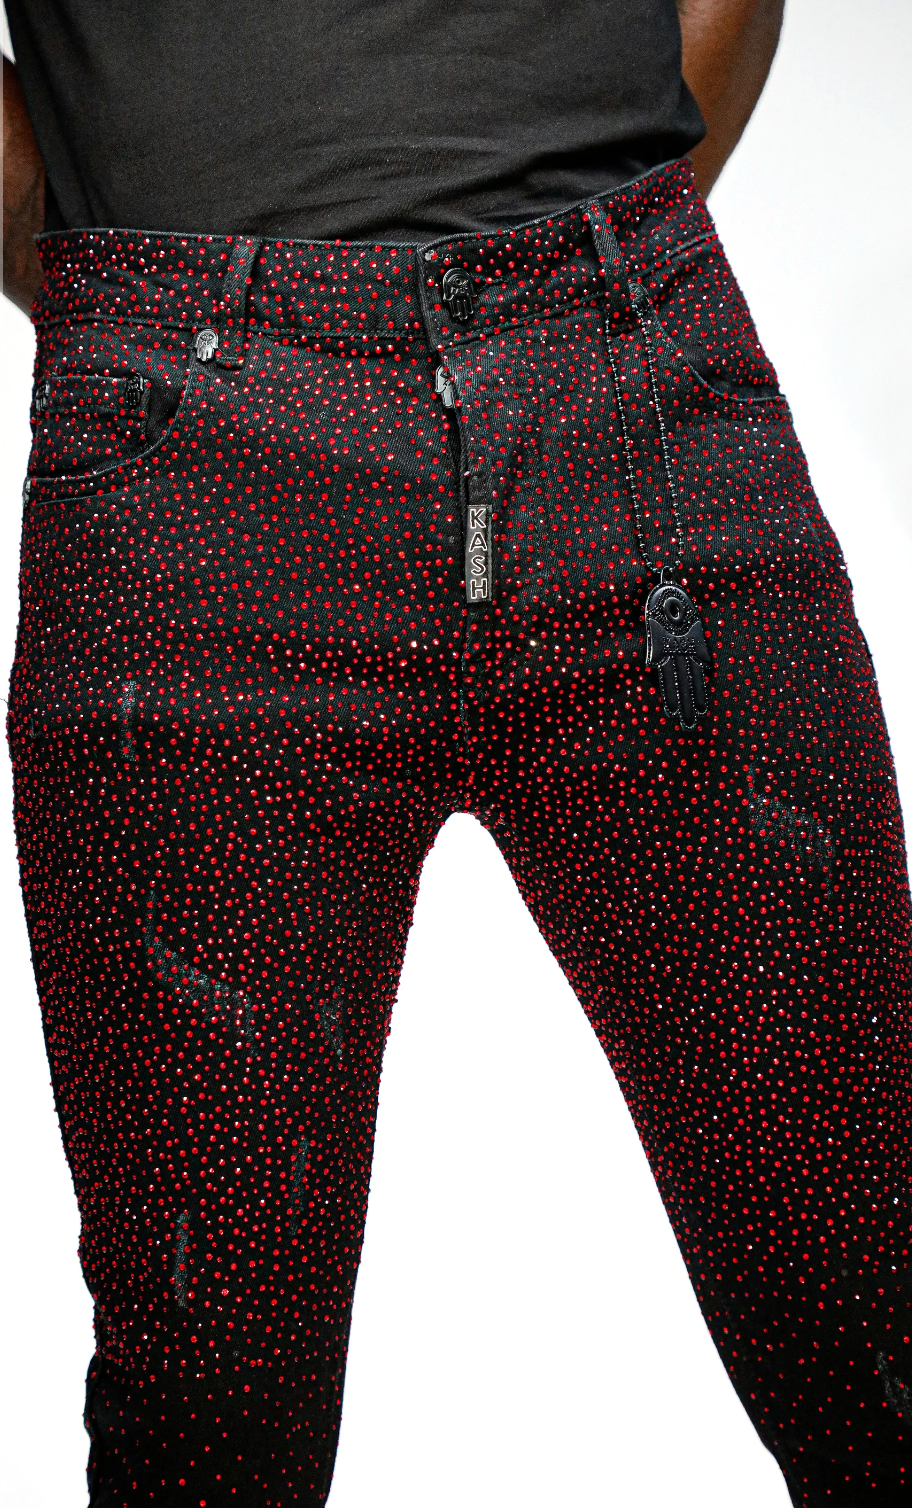 Kash Black/Red Jeans